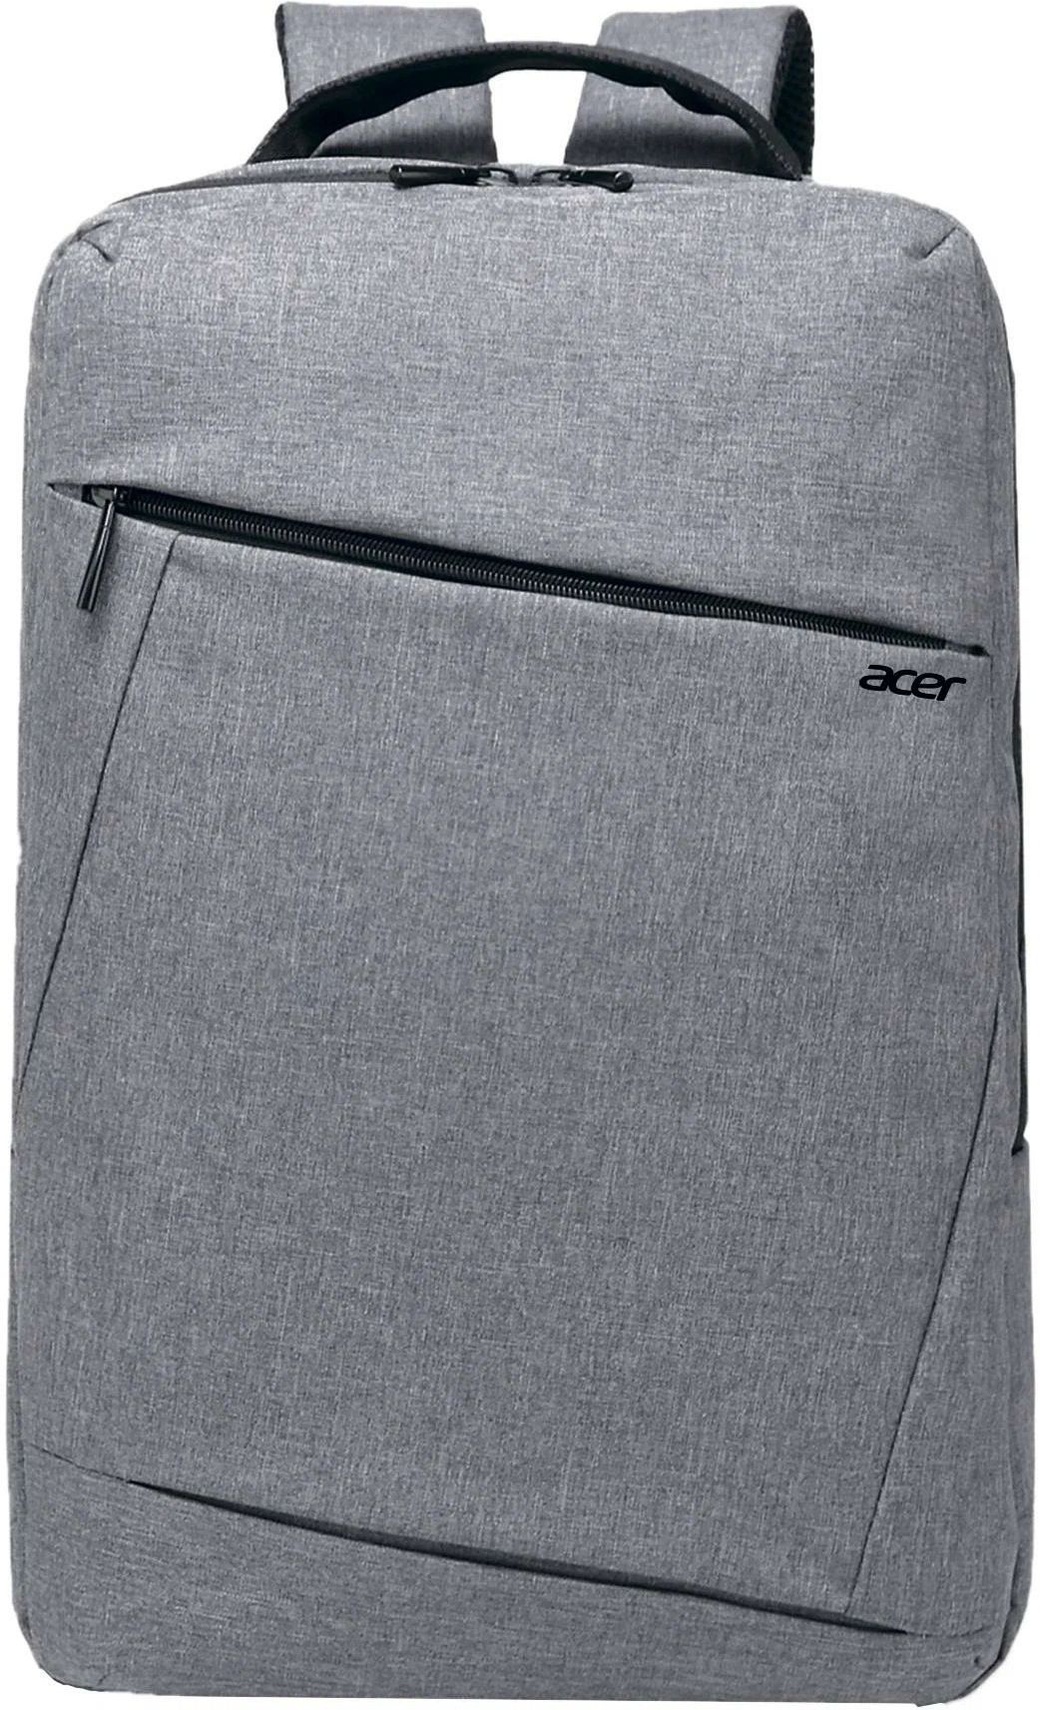 Рюкзак для ноутбука 15.6" Acer LS series OBG205, серый нейлонон фото